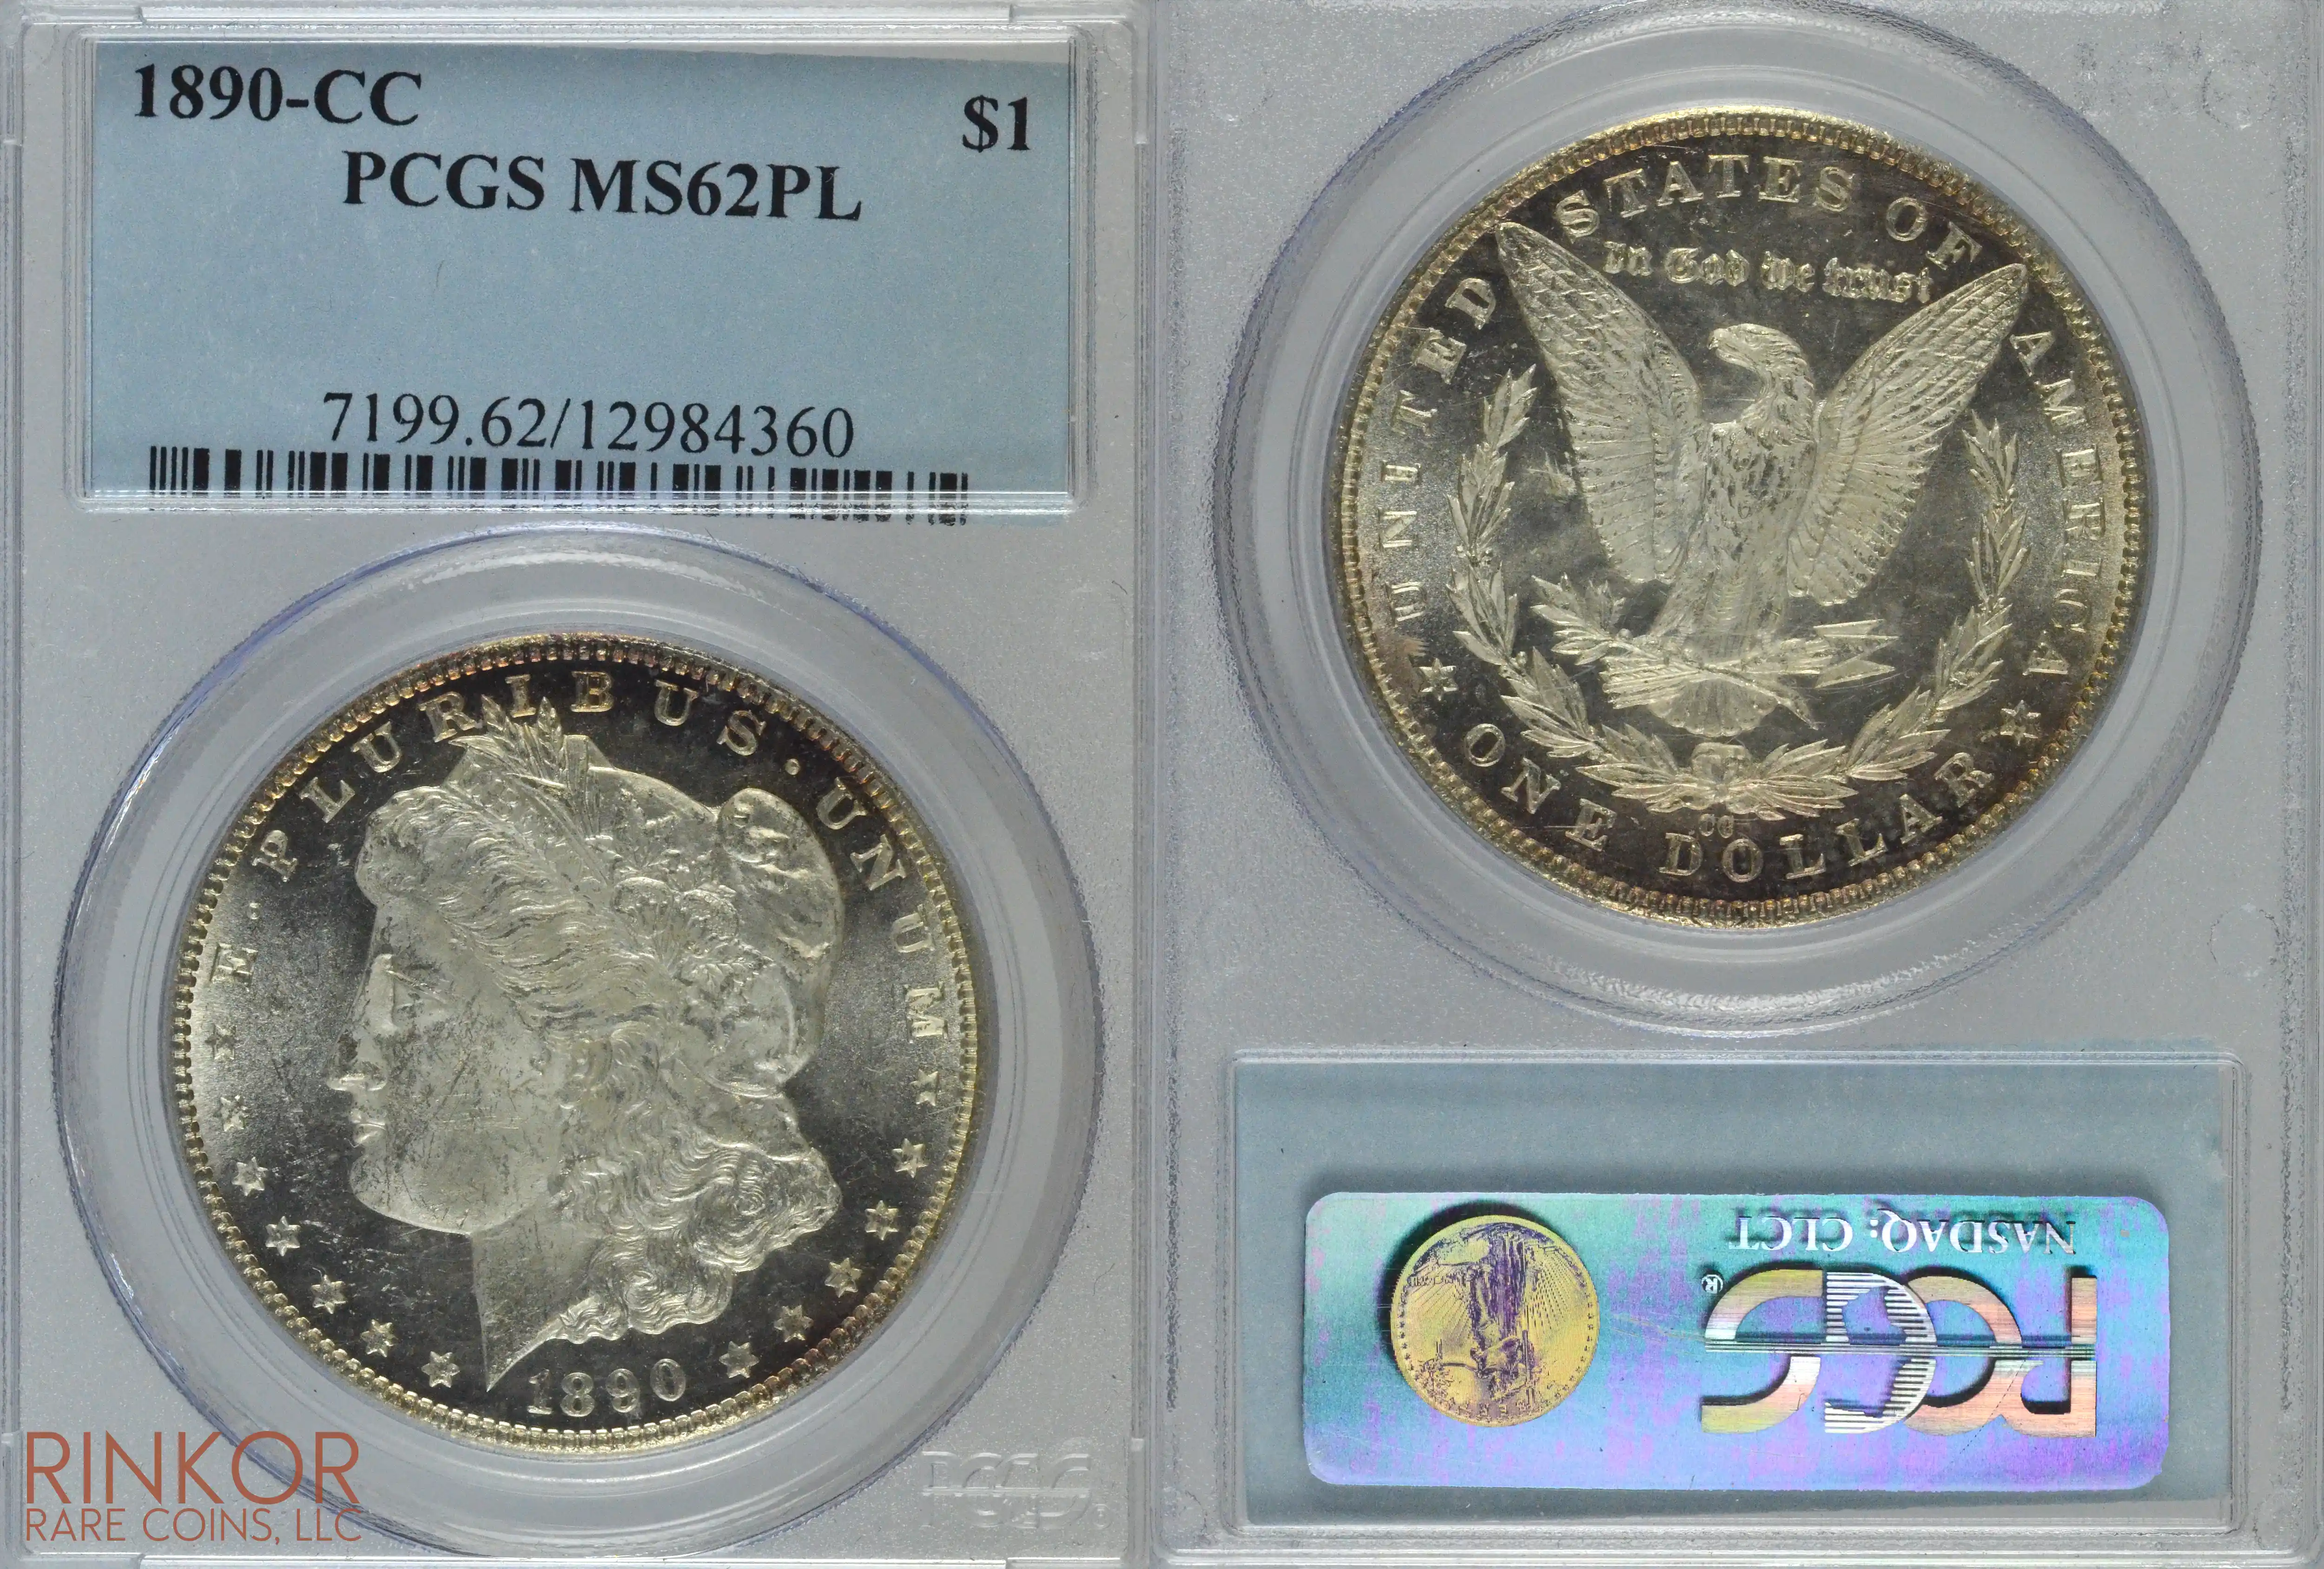 1890-CC $1 PCGS MS 62 PL